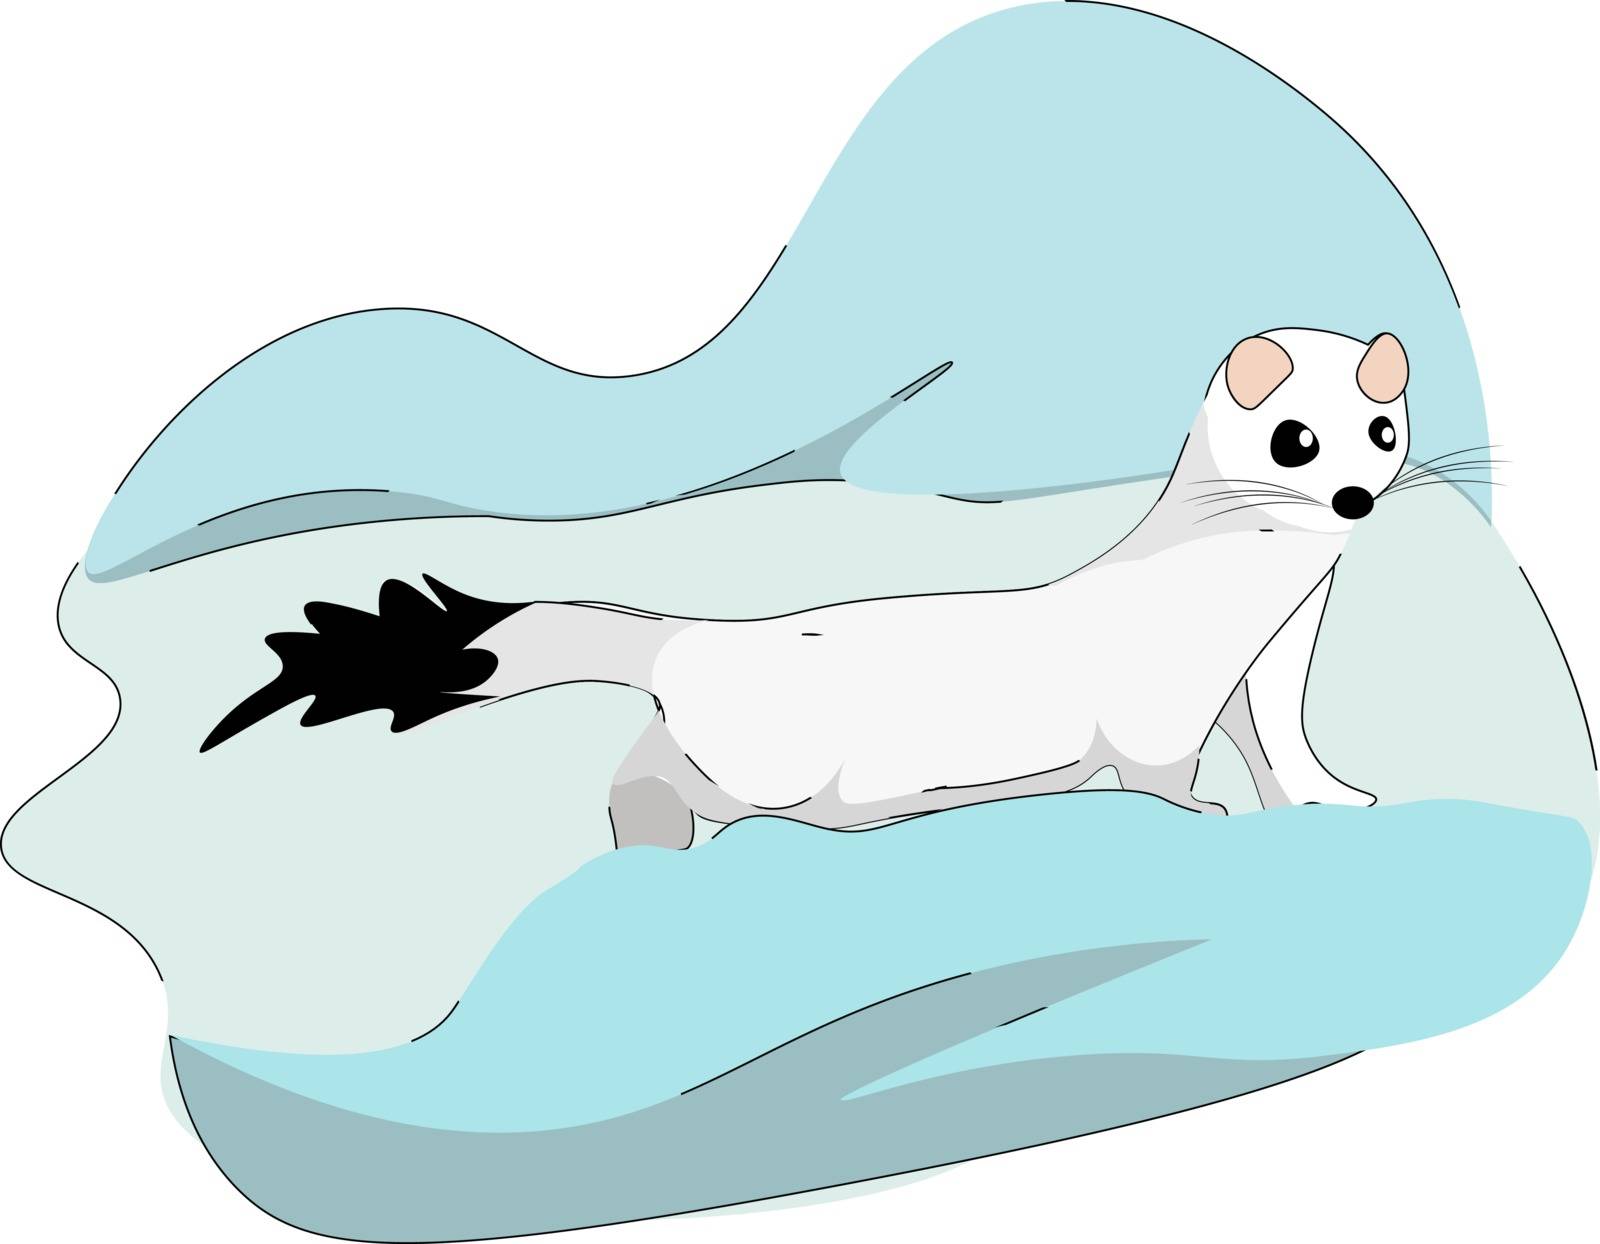 White stoat, illustration, vector on white background.